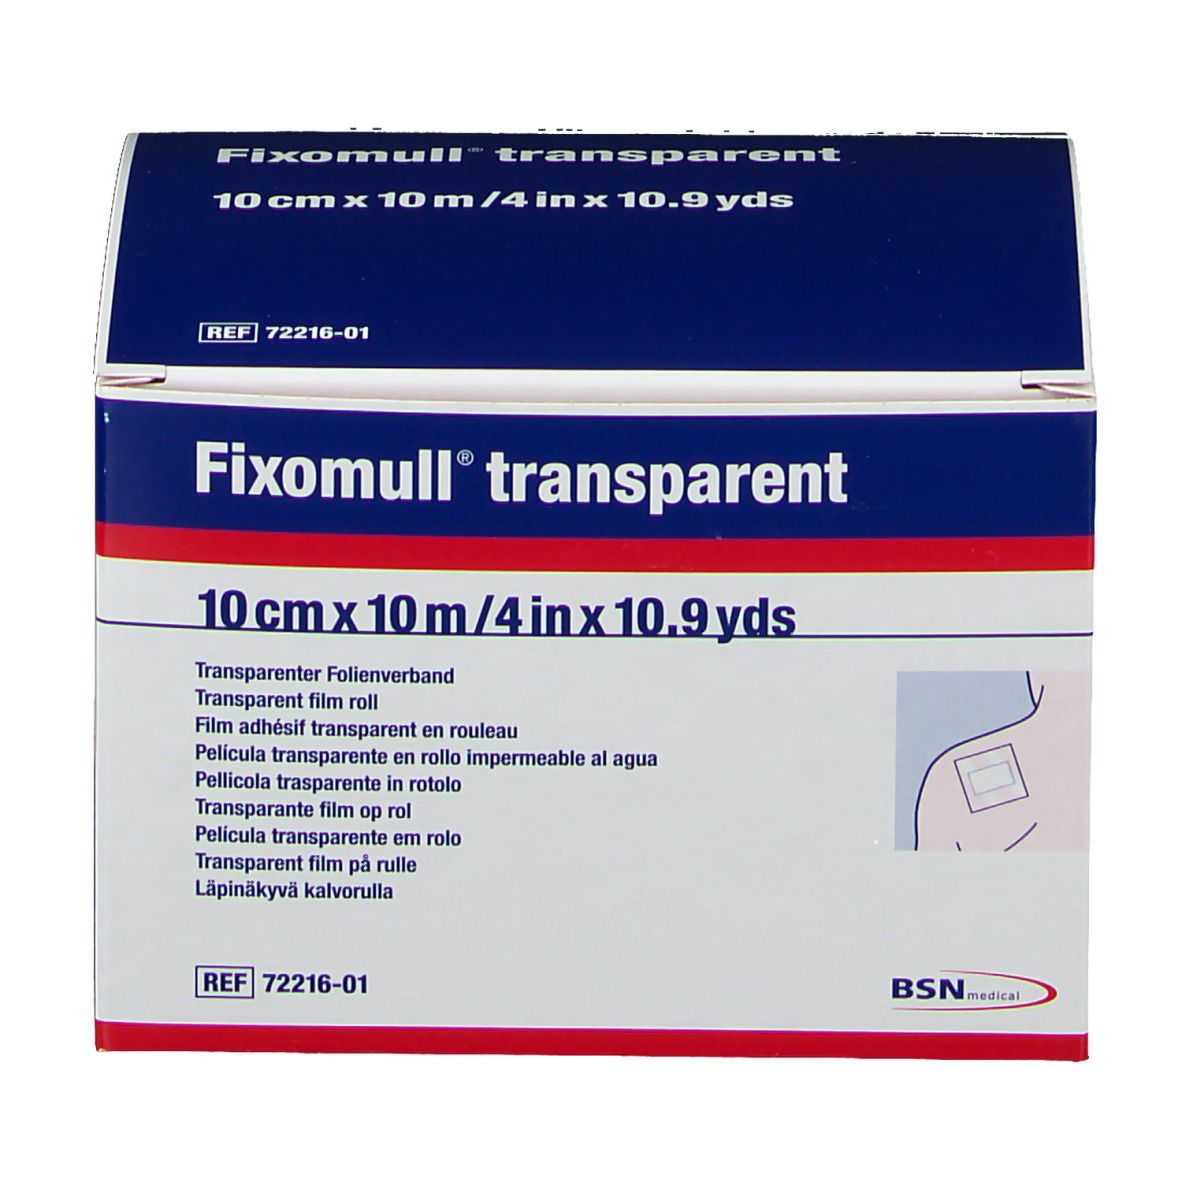 Fixomull® transparent 10 cm x 10 m